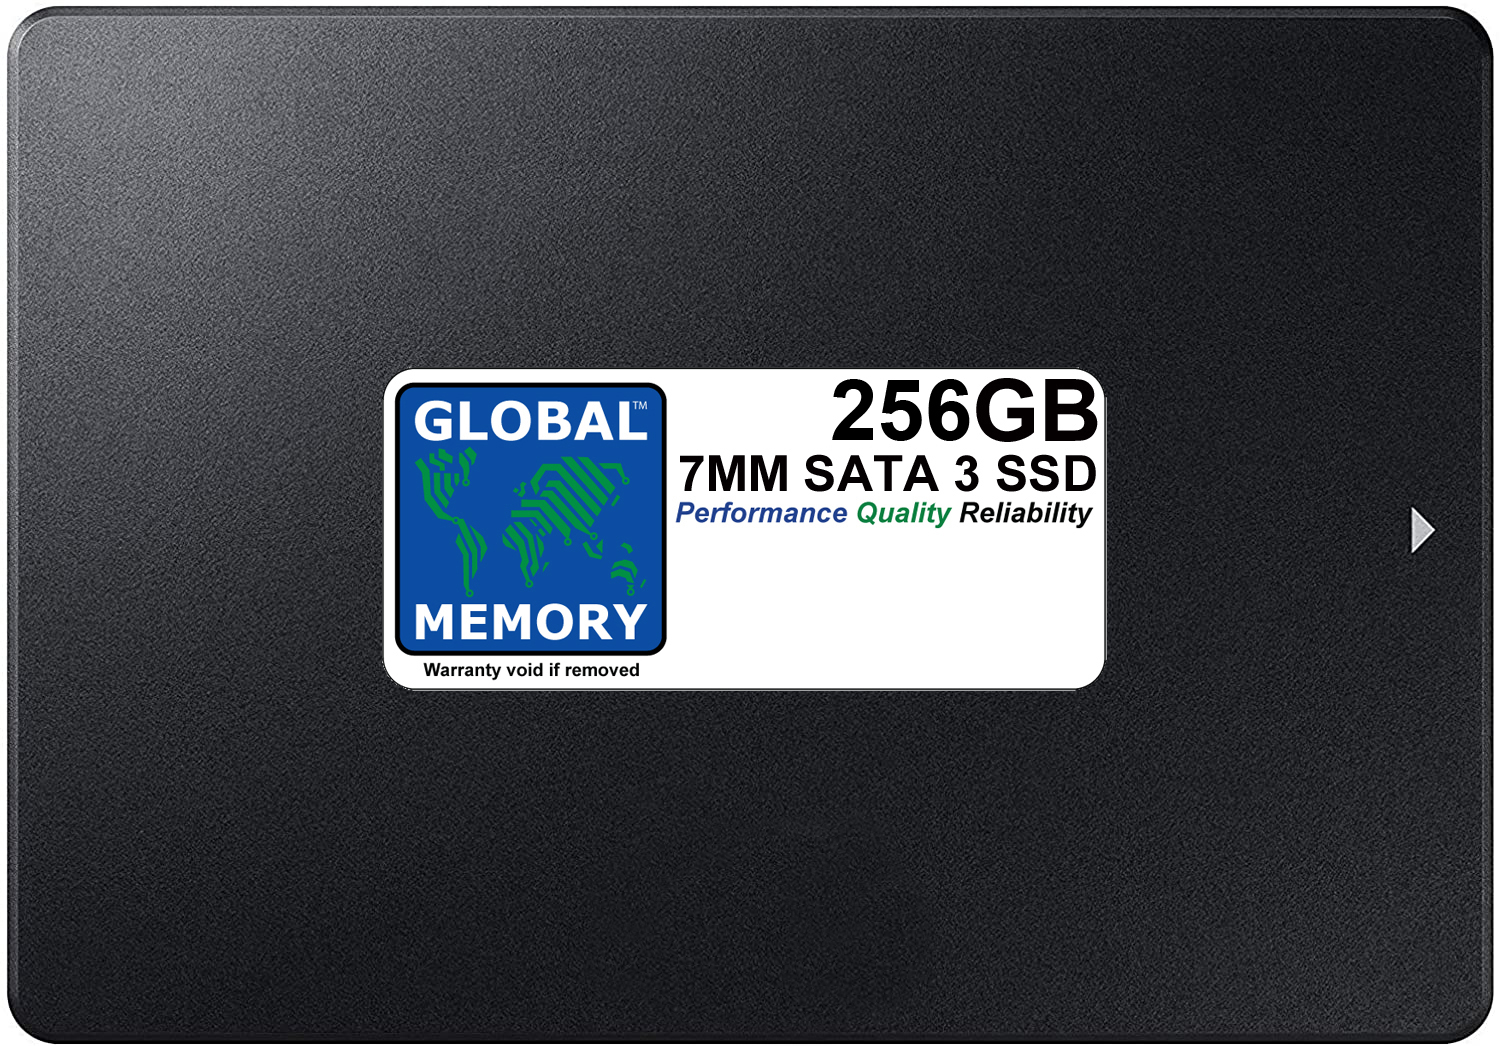 256GB 7mm 2.5" SATA 3 SSD FOR MAC PRO (2009 - 2010 - 2012)